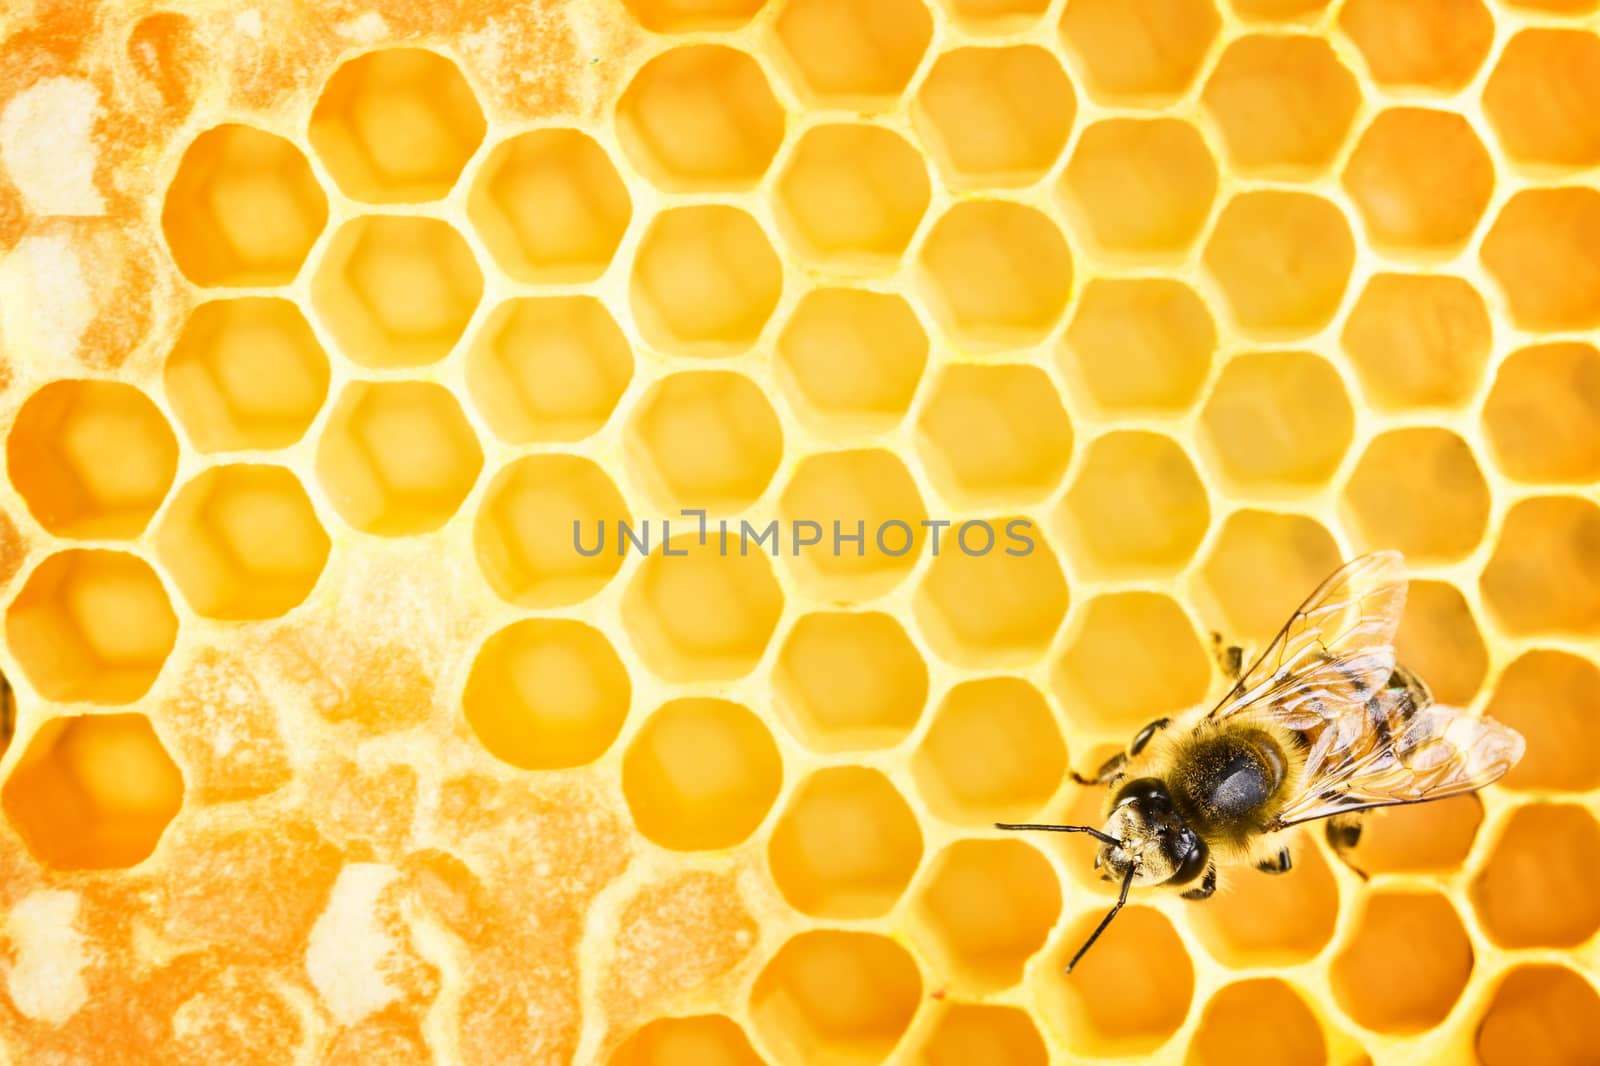 Working bee on honeycomb